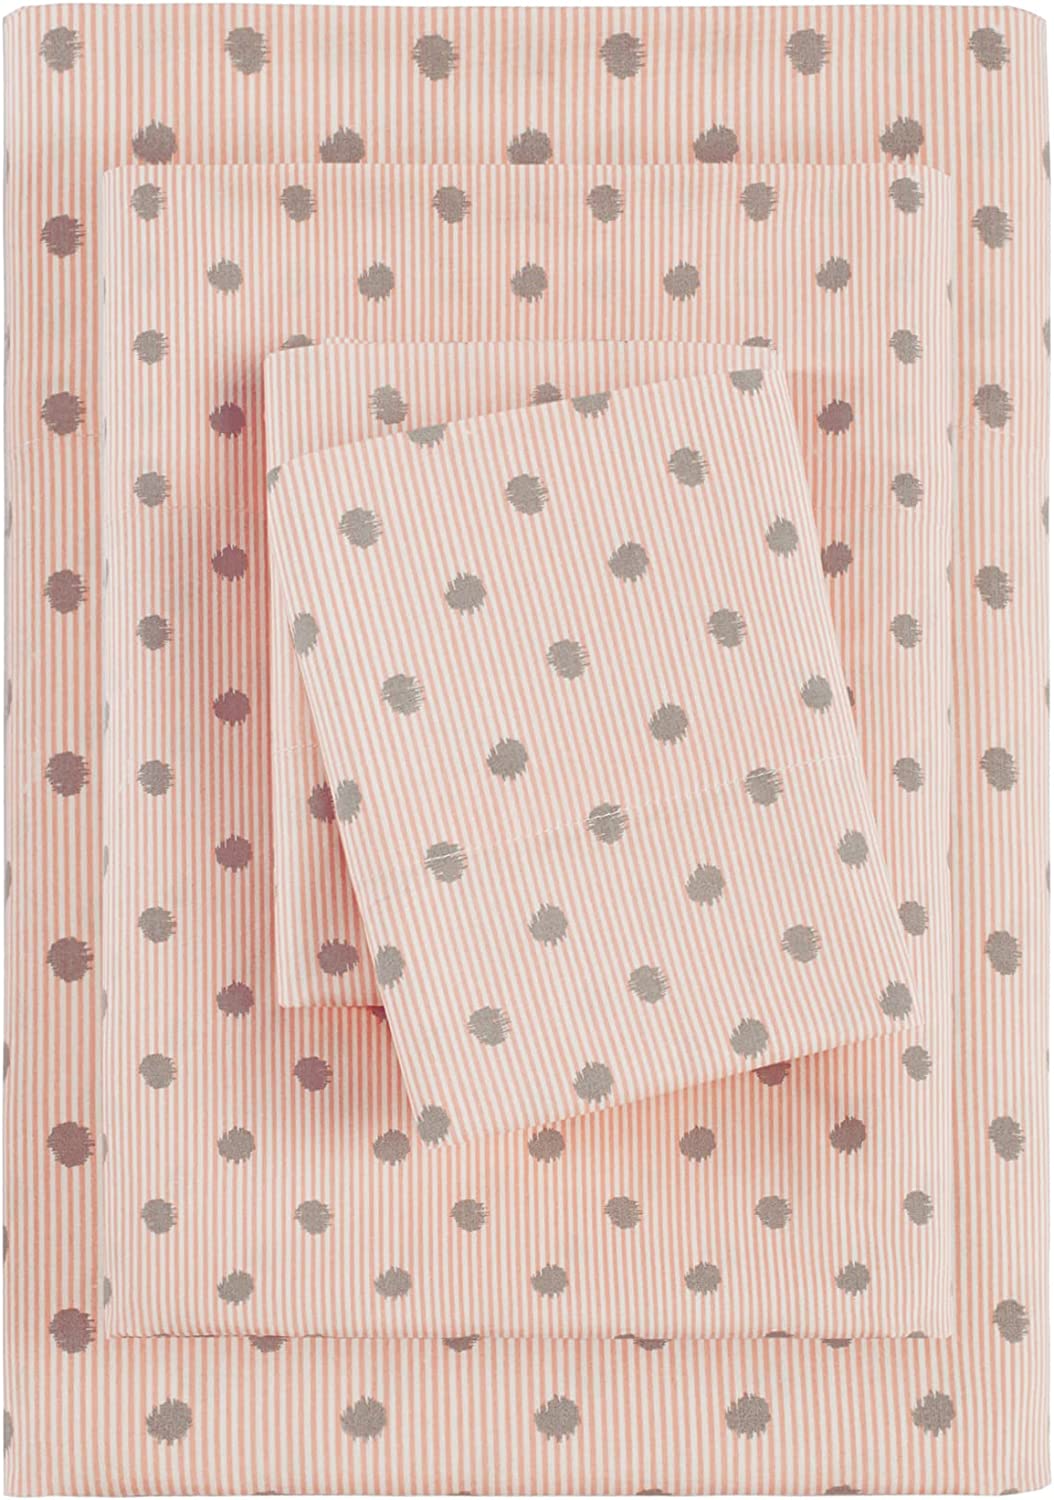 HipStyle Printed Sheet Set, King, Pink